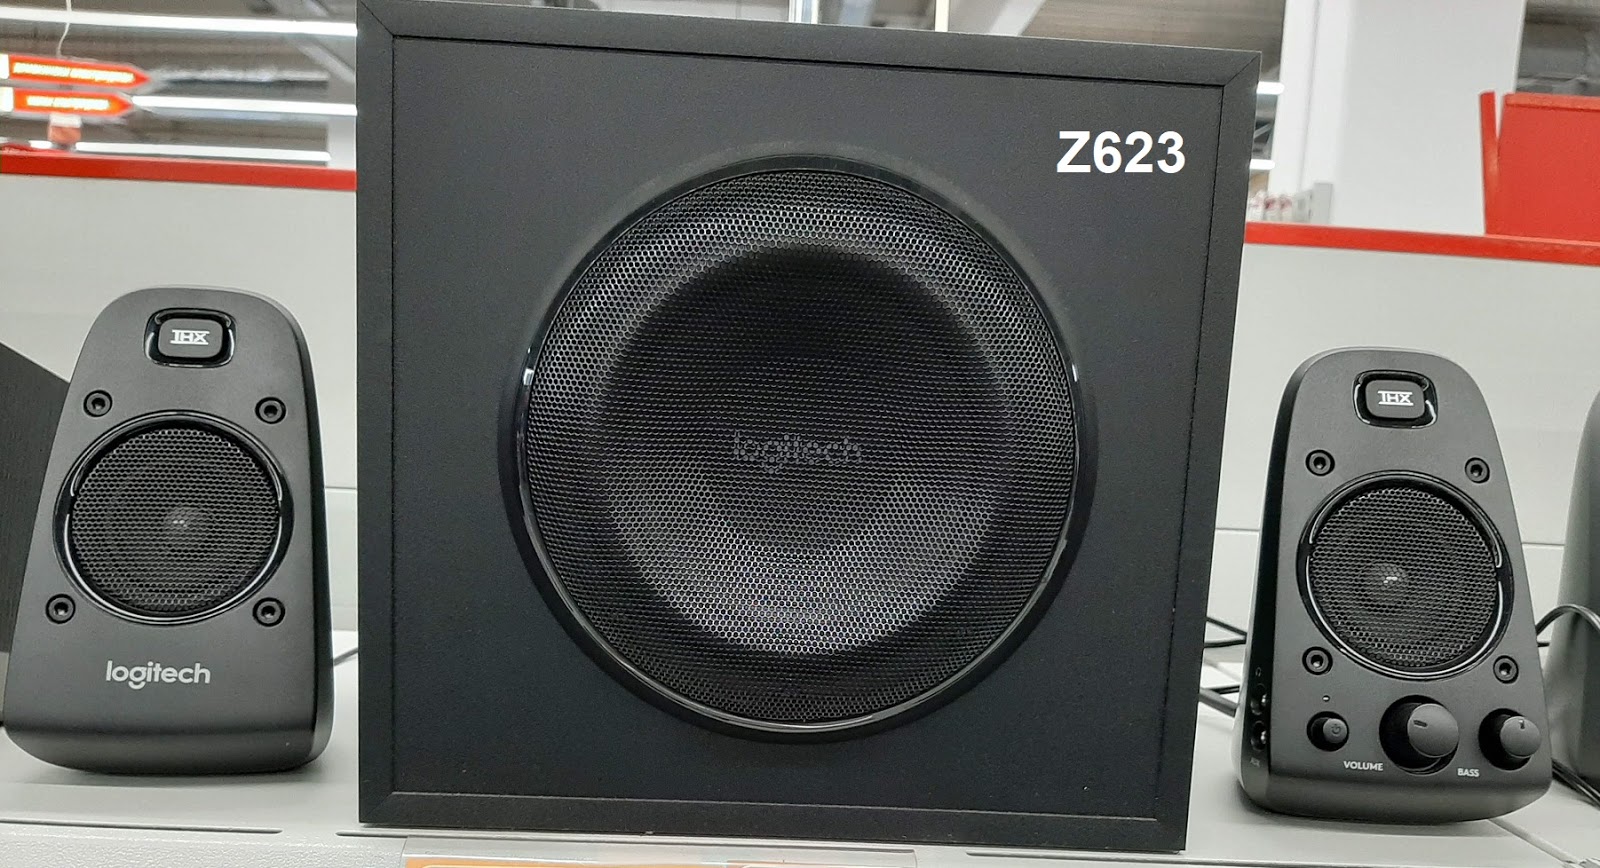 Logitech Z623 - still in 2020?